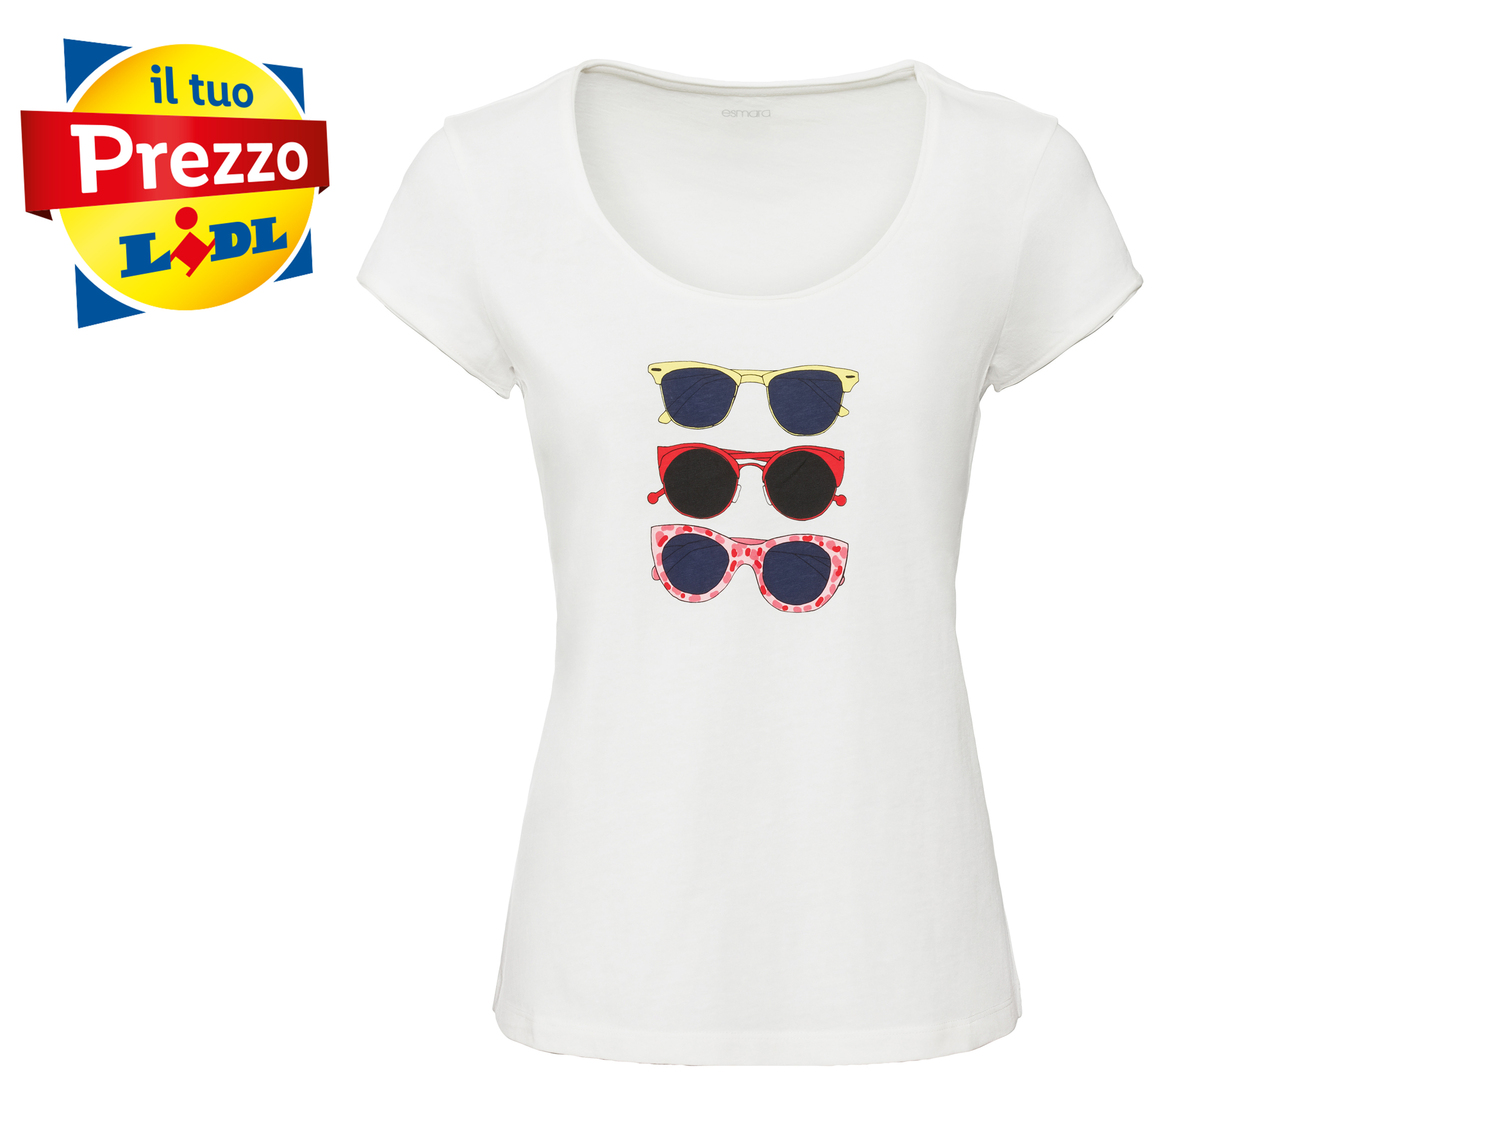 T-shirt da donna Esmara, prezzo 3.99 € 
Misure: S-L 
- 
In puro cotone
Prodotto ...